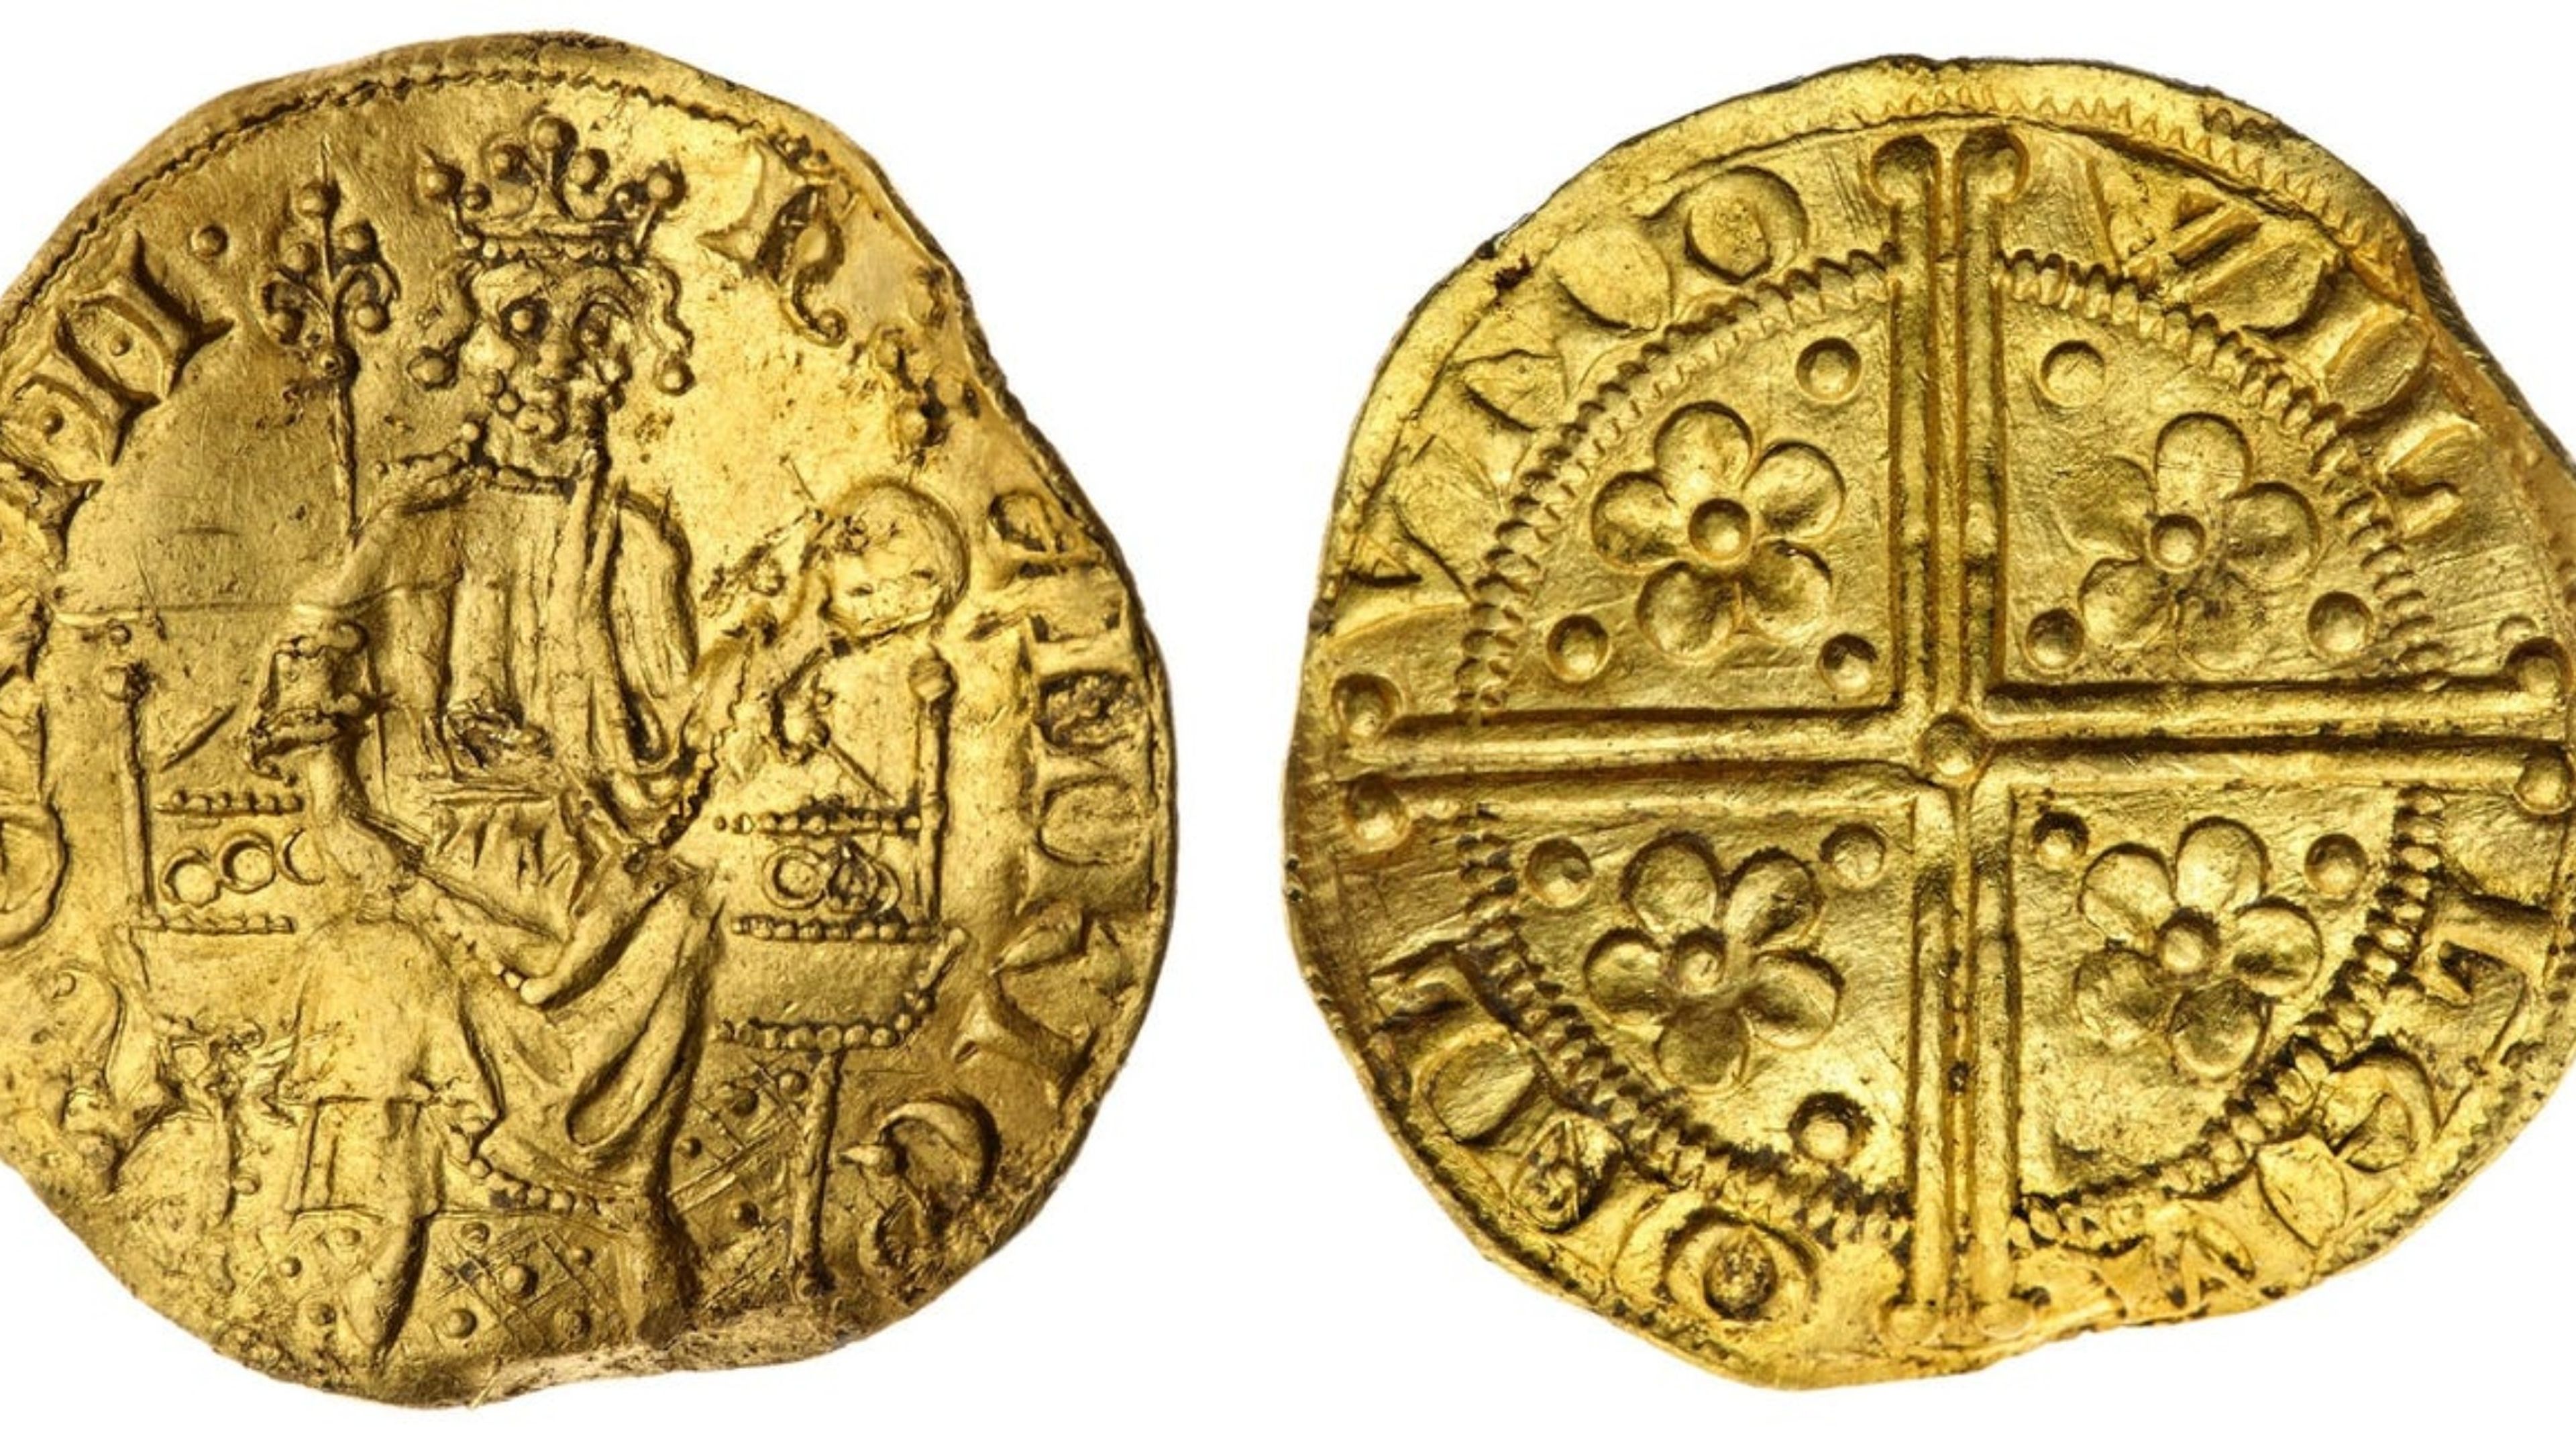 La moneda de oro encontrada por el padre de dos hijos, que data del siglo XIII.